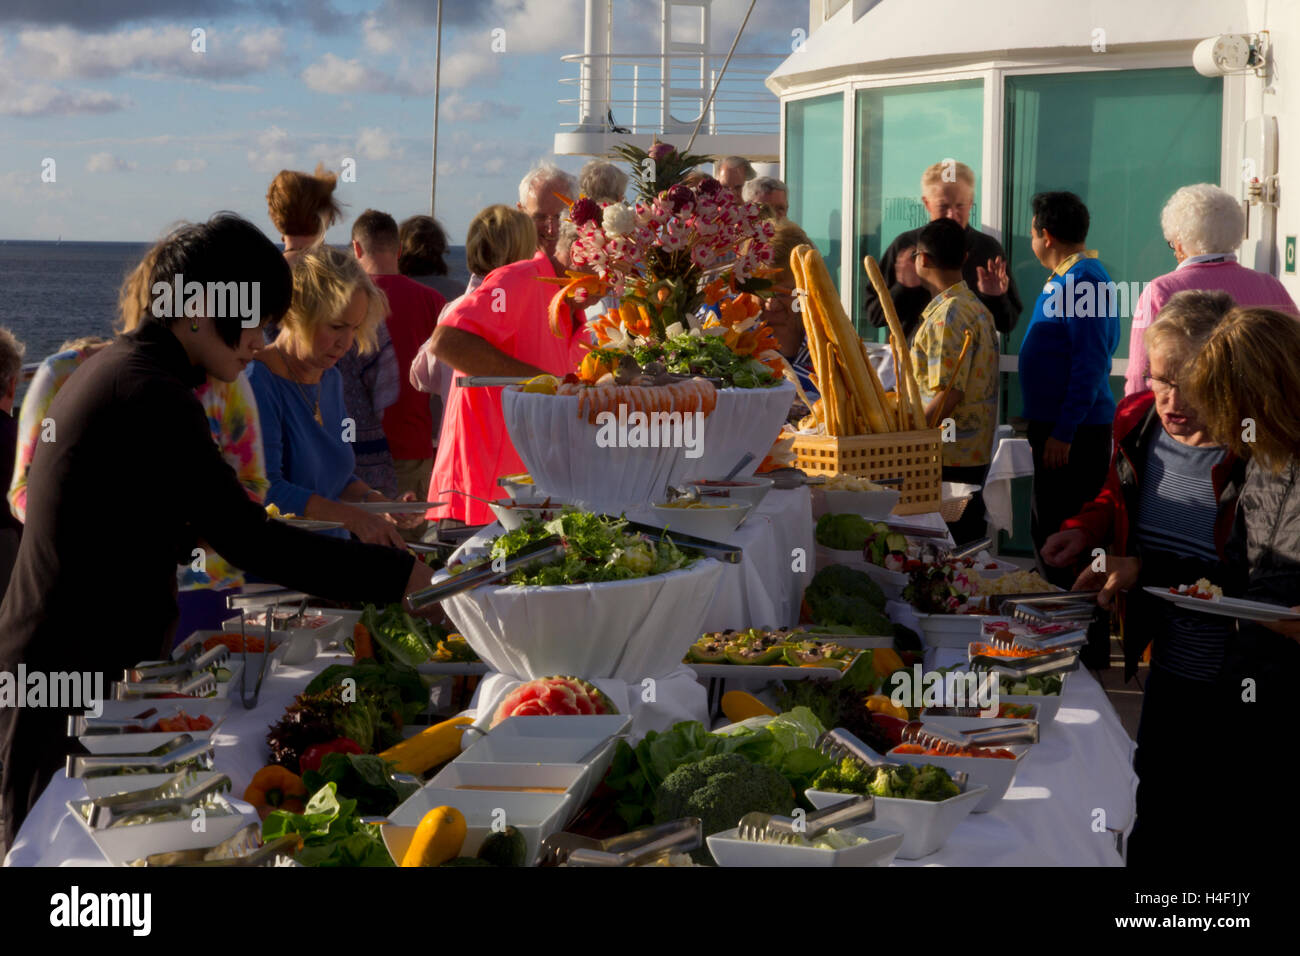 Un elaborato buffet all'aperto barbecue era una specialità gastronomiche durante un estate 2016 Baltic voyage su Windstar Cruises Wind Surf. Foto Stock